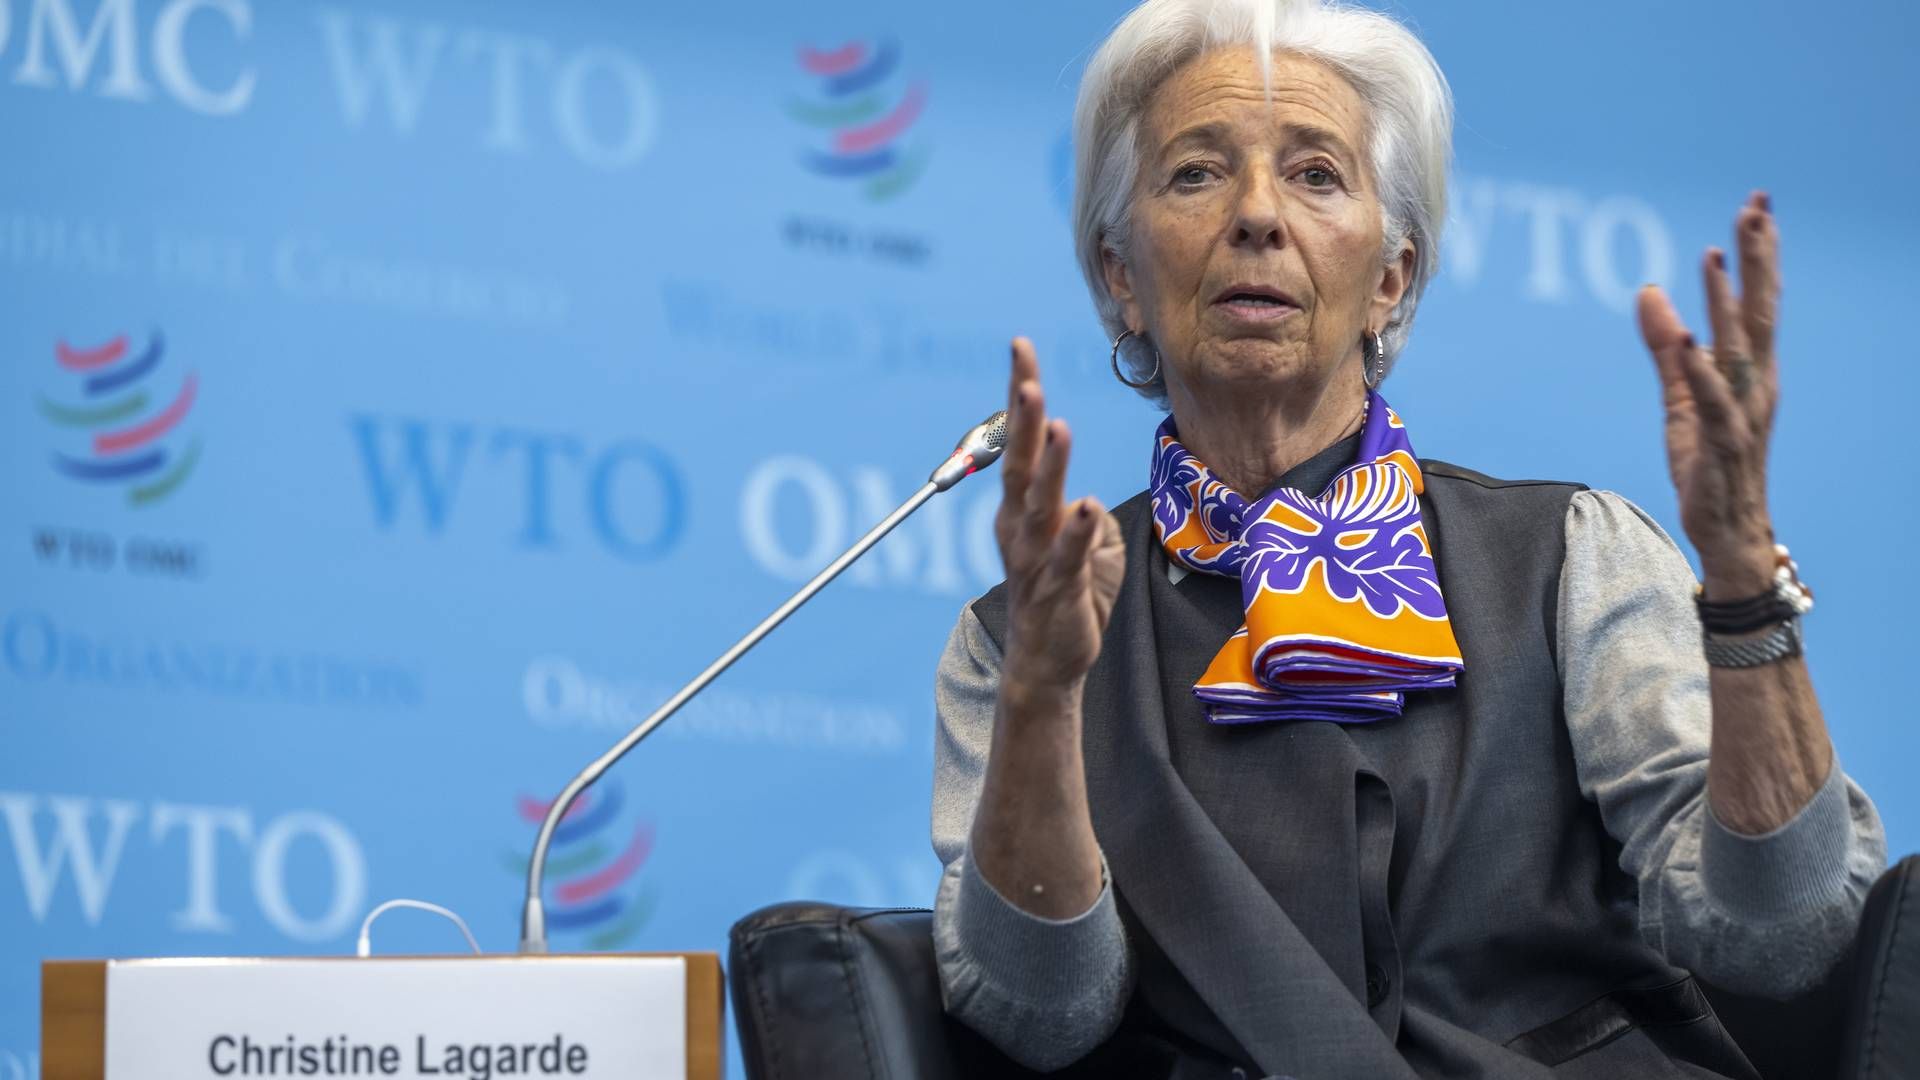 EZB-Präsidentin Christine Lagarde | Foto: picture alliance/KEYSTONE | MARTIAL TREZZINI